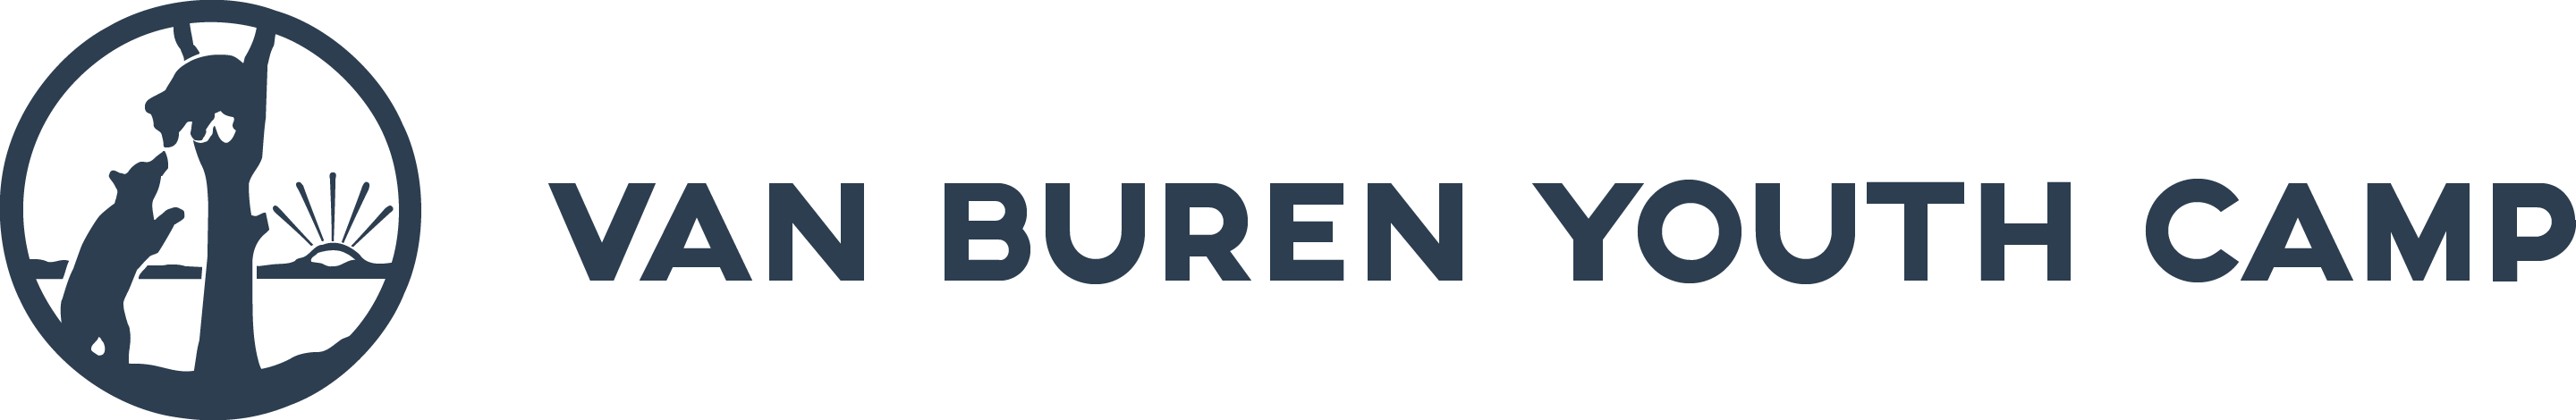 Van Buren Youth Camp logo